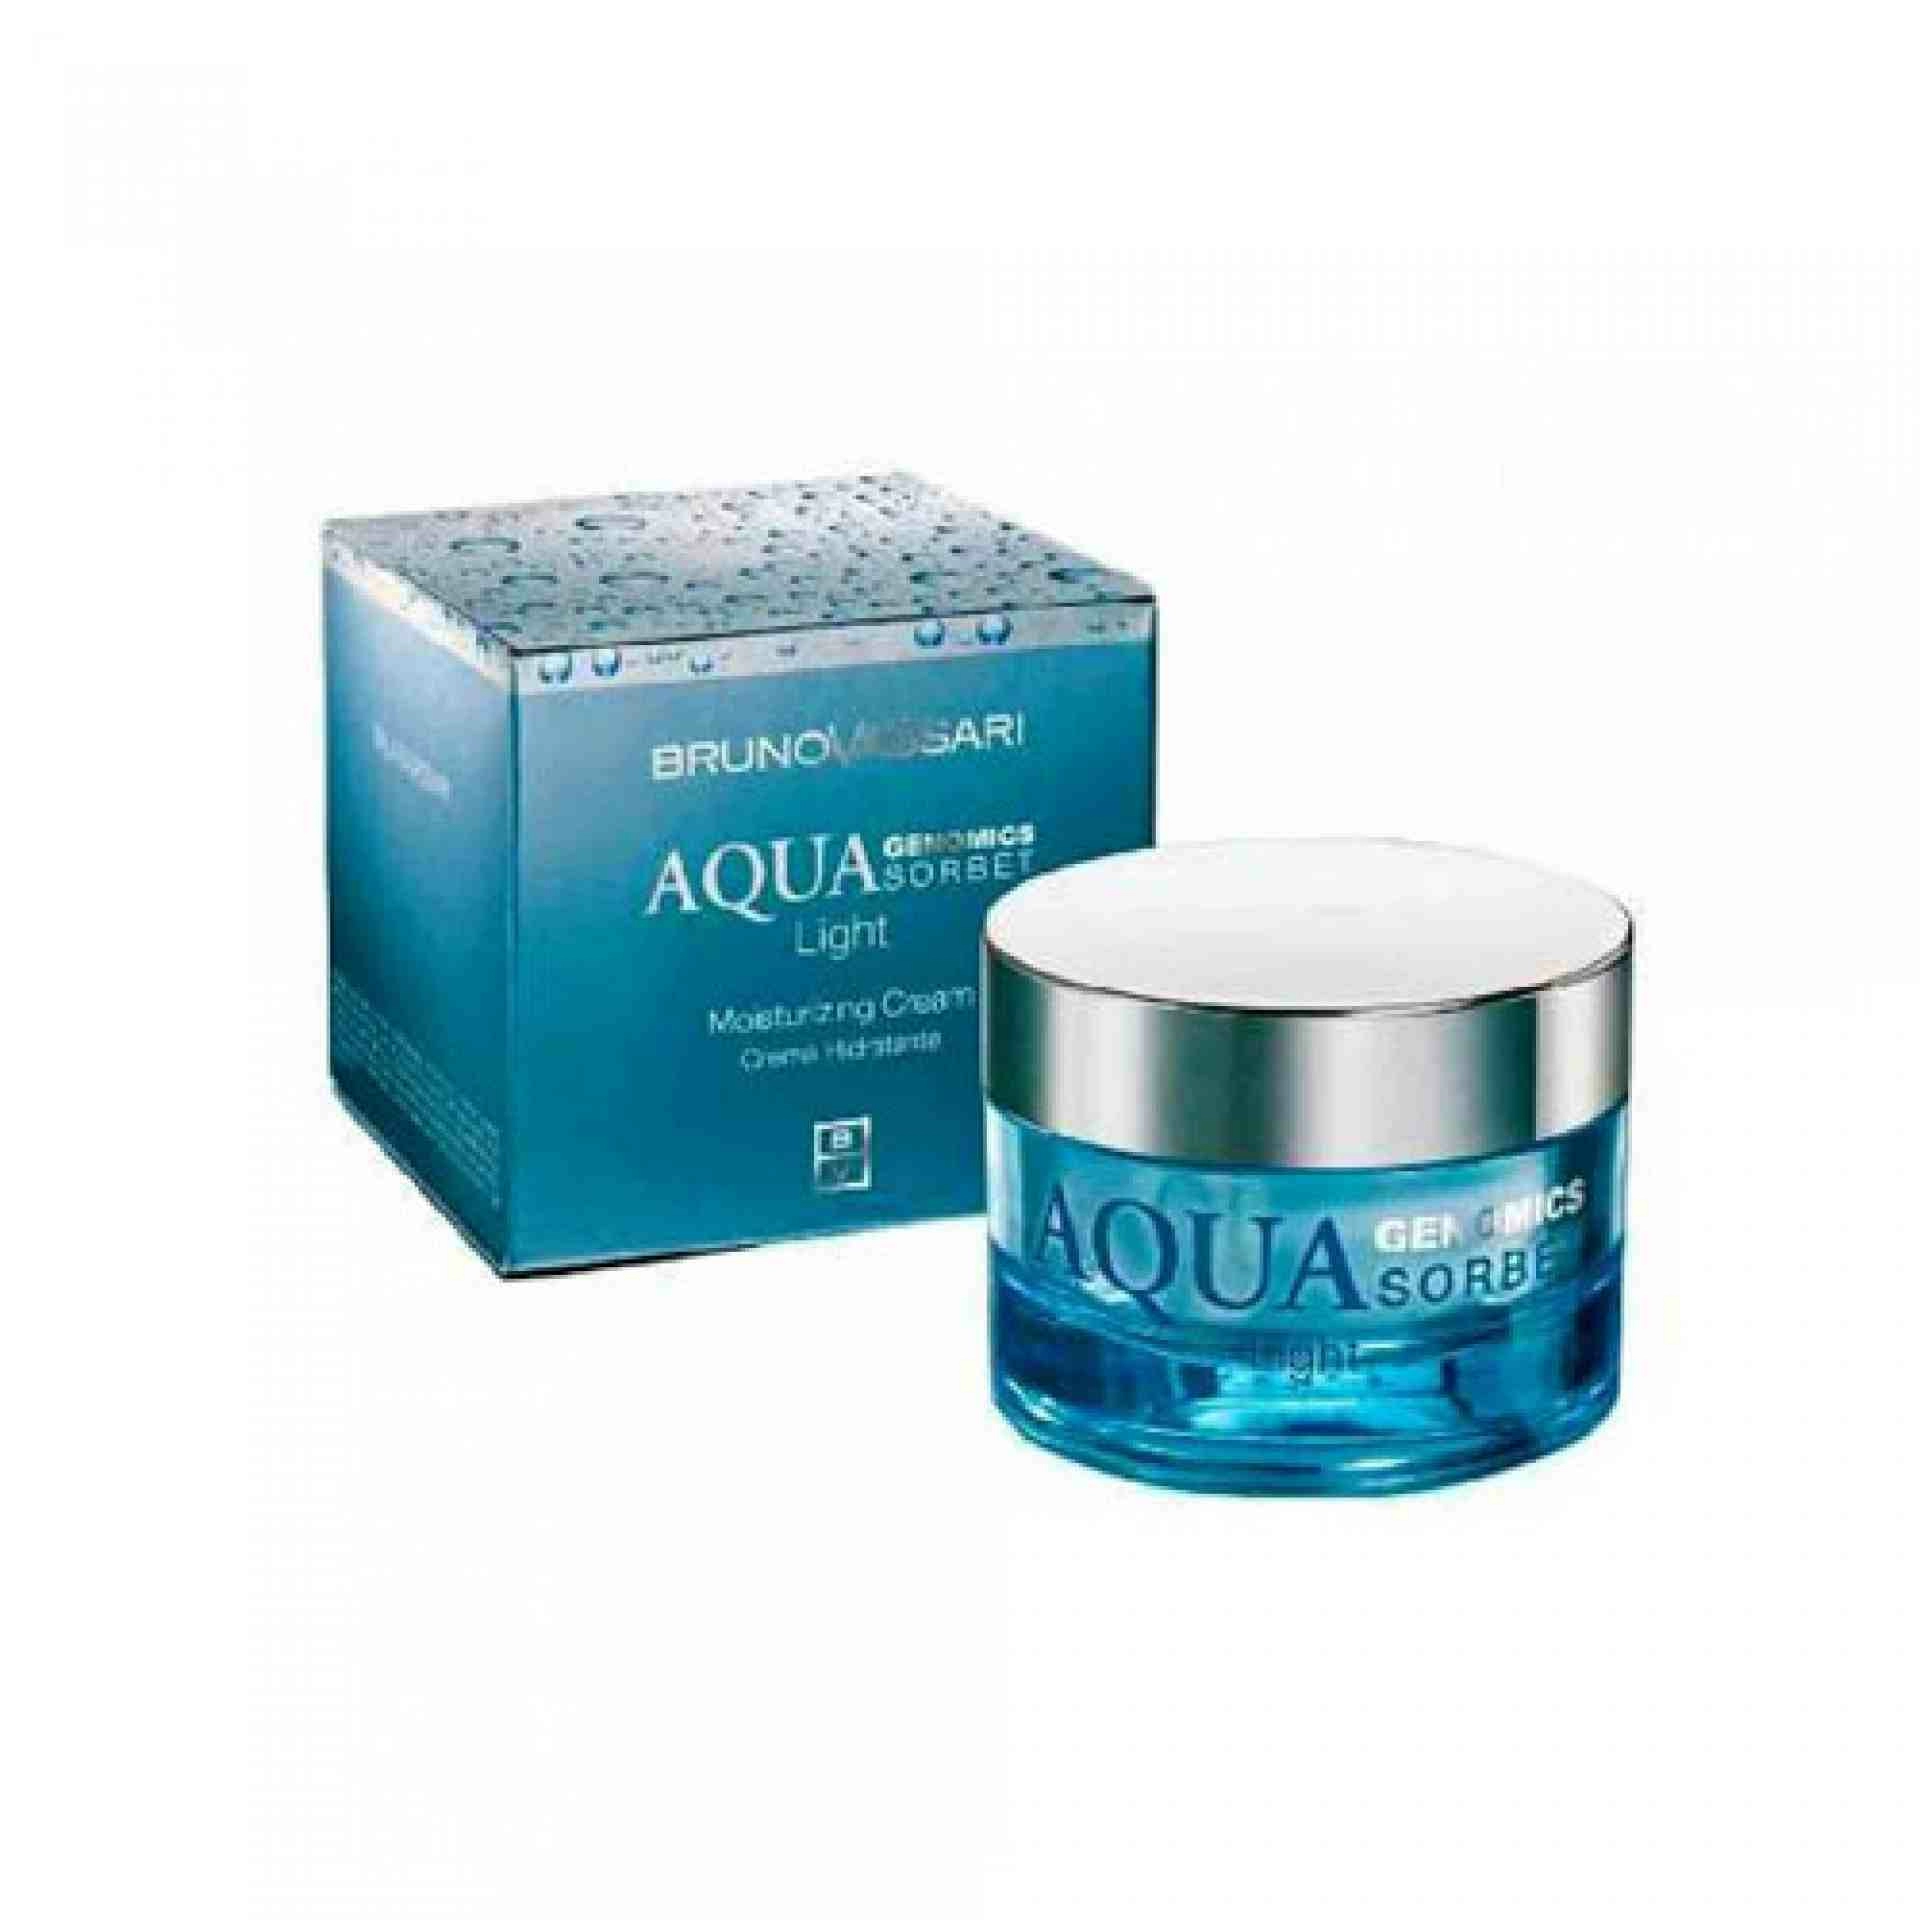 Aqua Sorbet Light | Crema hidratante pieles grasas 50ml - Aqua Genomics - Bruno Vassari ®